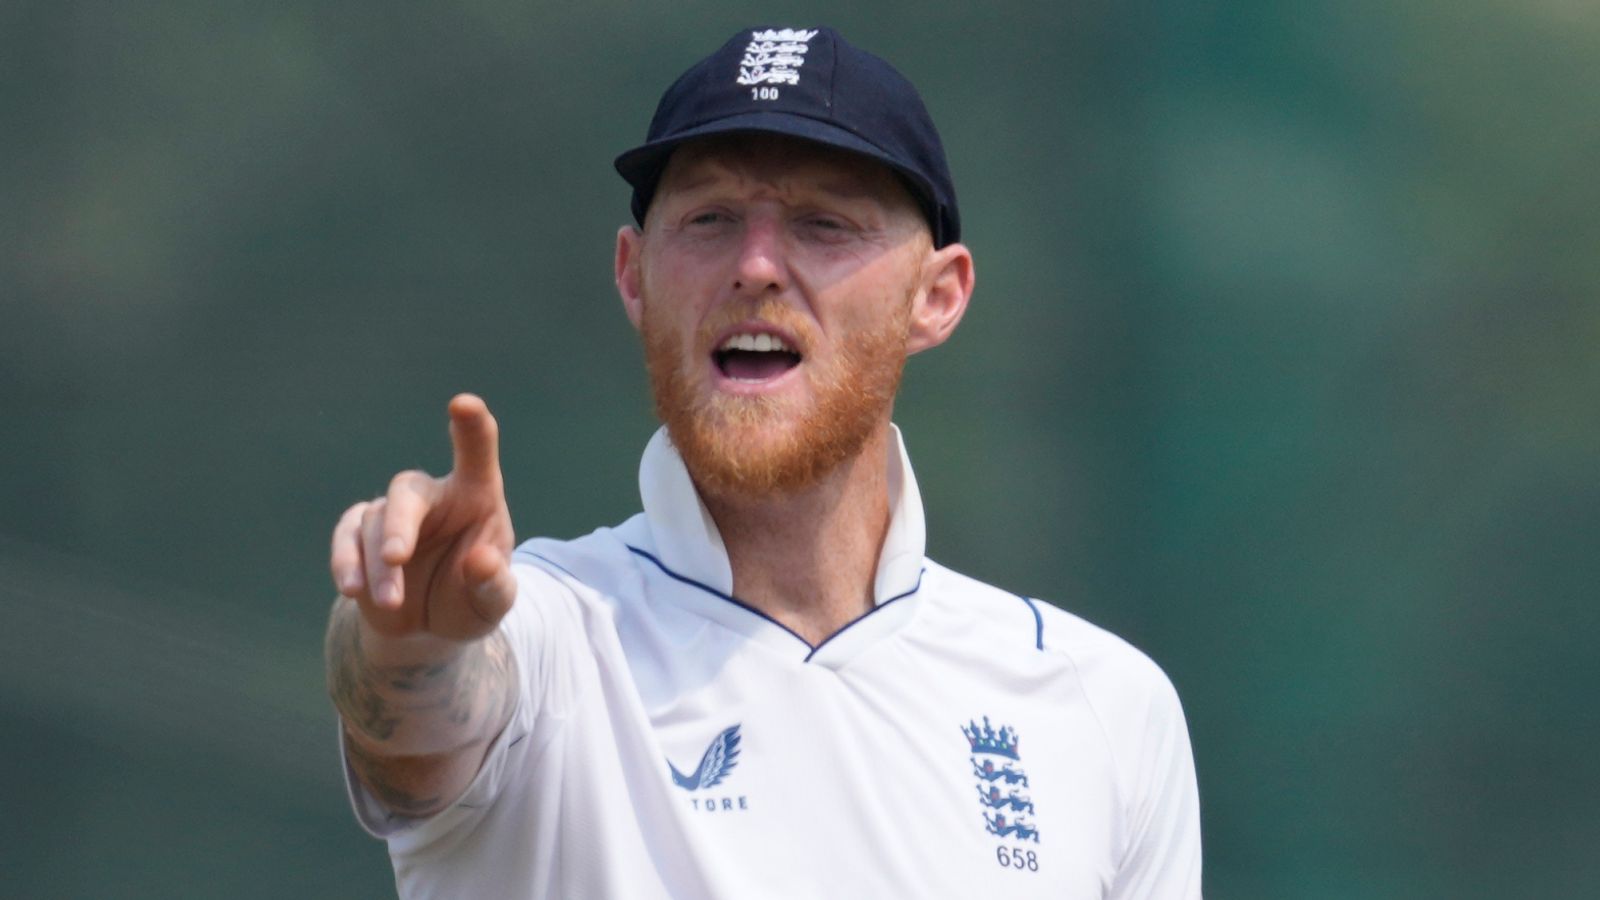 Inglaterra vs Indias Occidentales: el equipo de Ben Stokes, Inglaterra, no muestra cambios mientras busca barrer la serie en la tercera prueba en Edgbaston | Noticias de Cricket